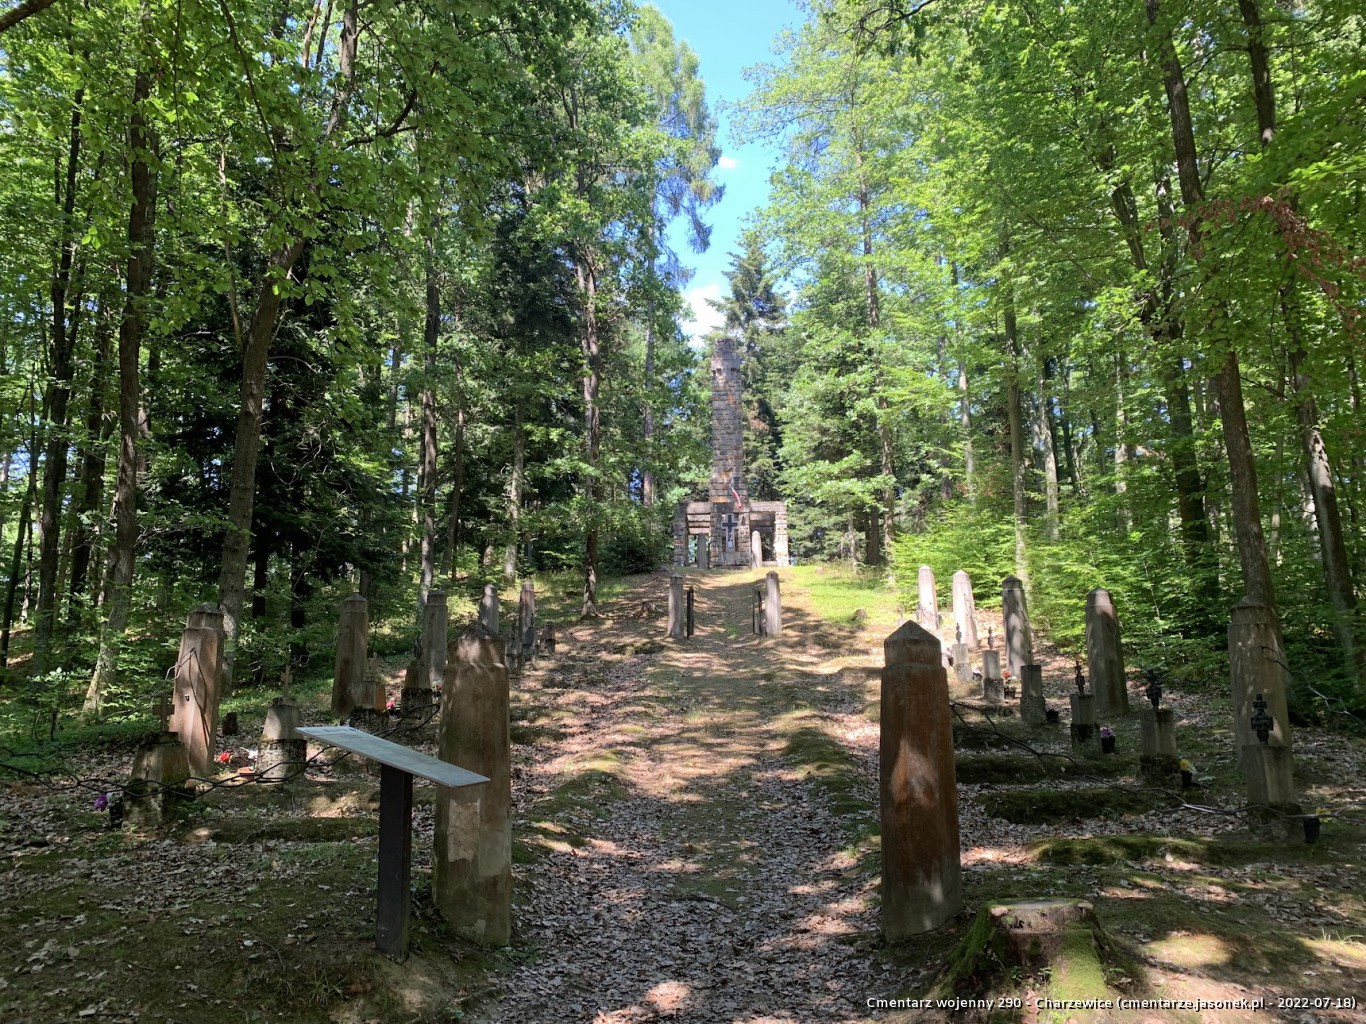 Cmentarz wojenny 290 - Charzewice